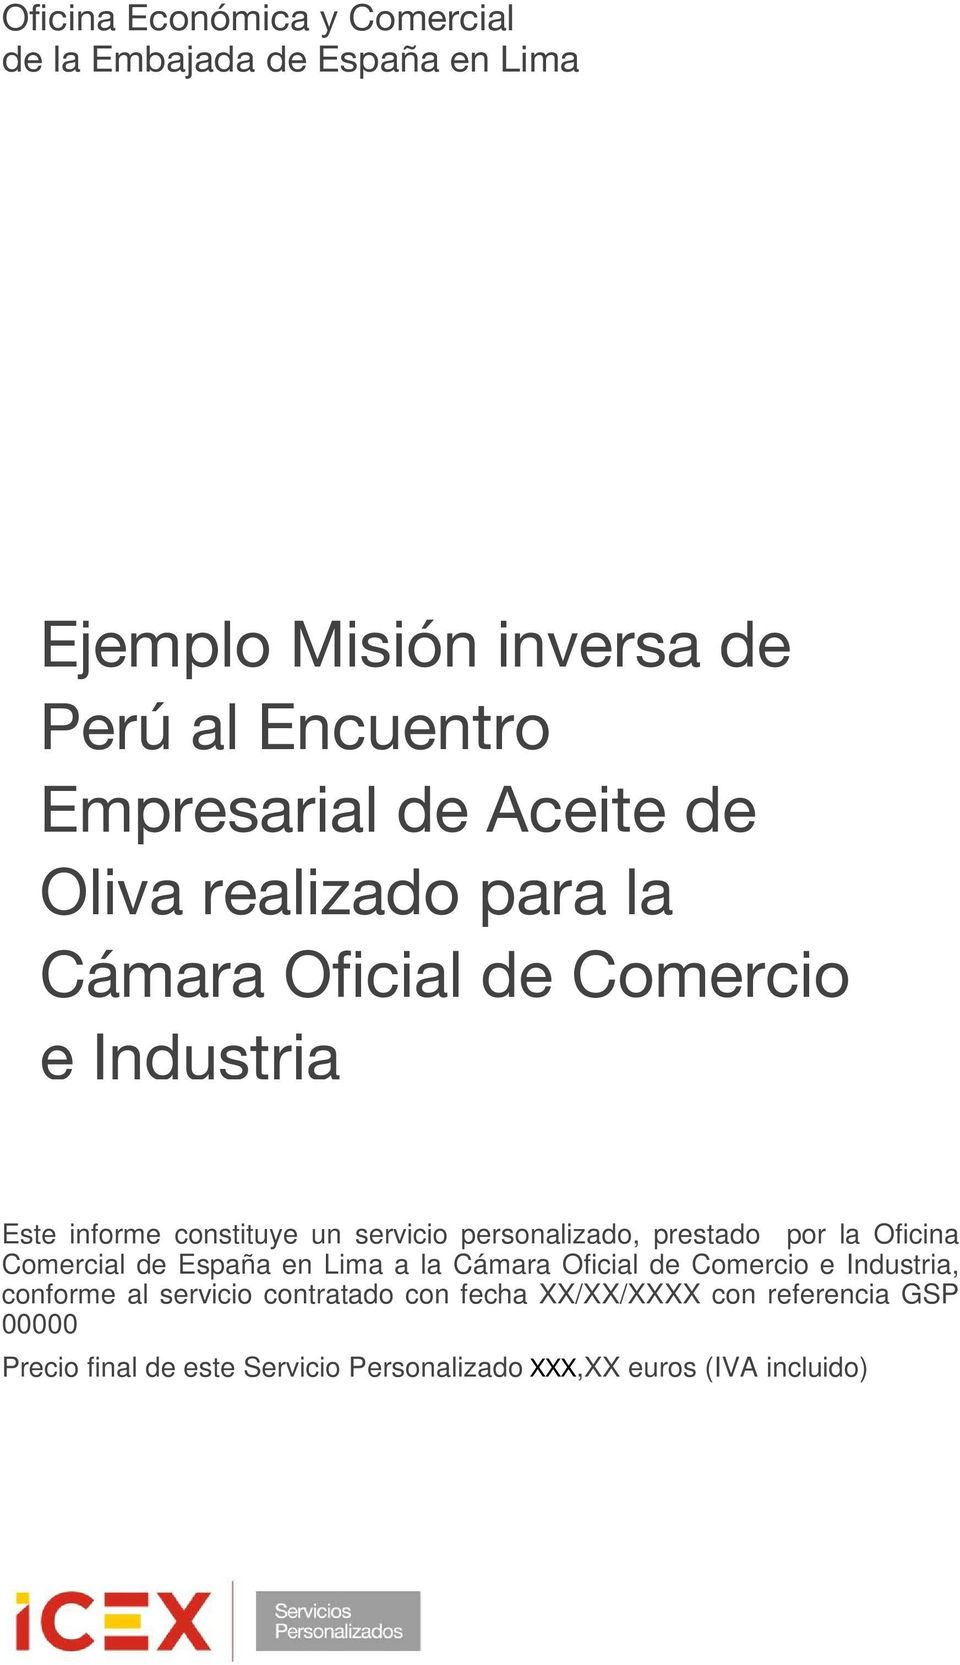 personalizado, prestado por la Oficina Comercial de España en Lima a la Cámara Oficial de Comercio e Industria, conforme